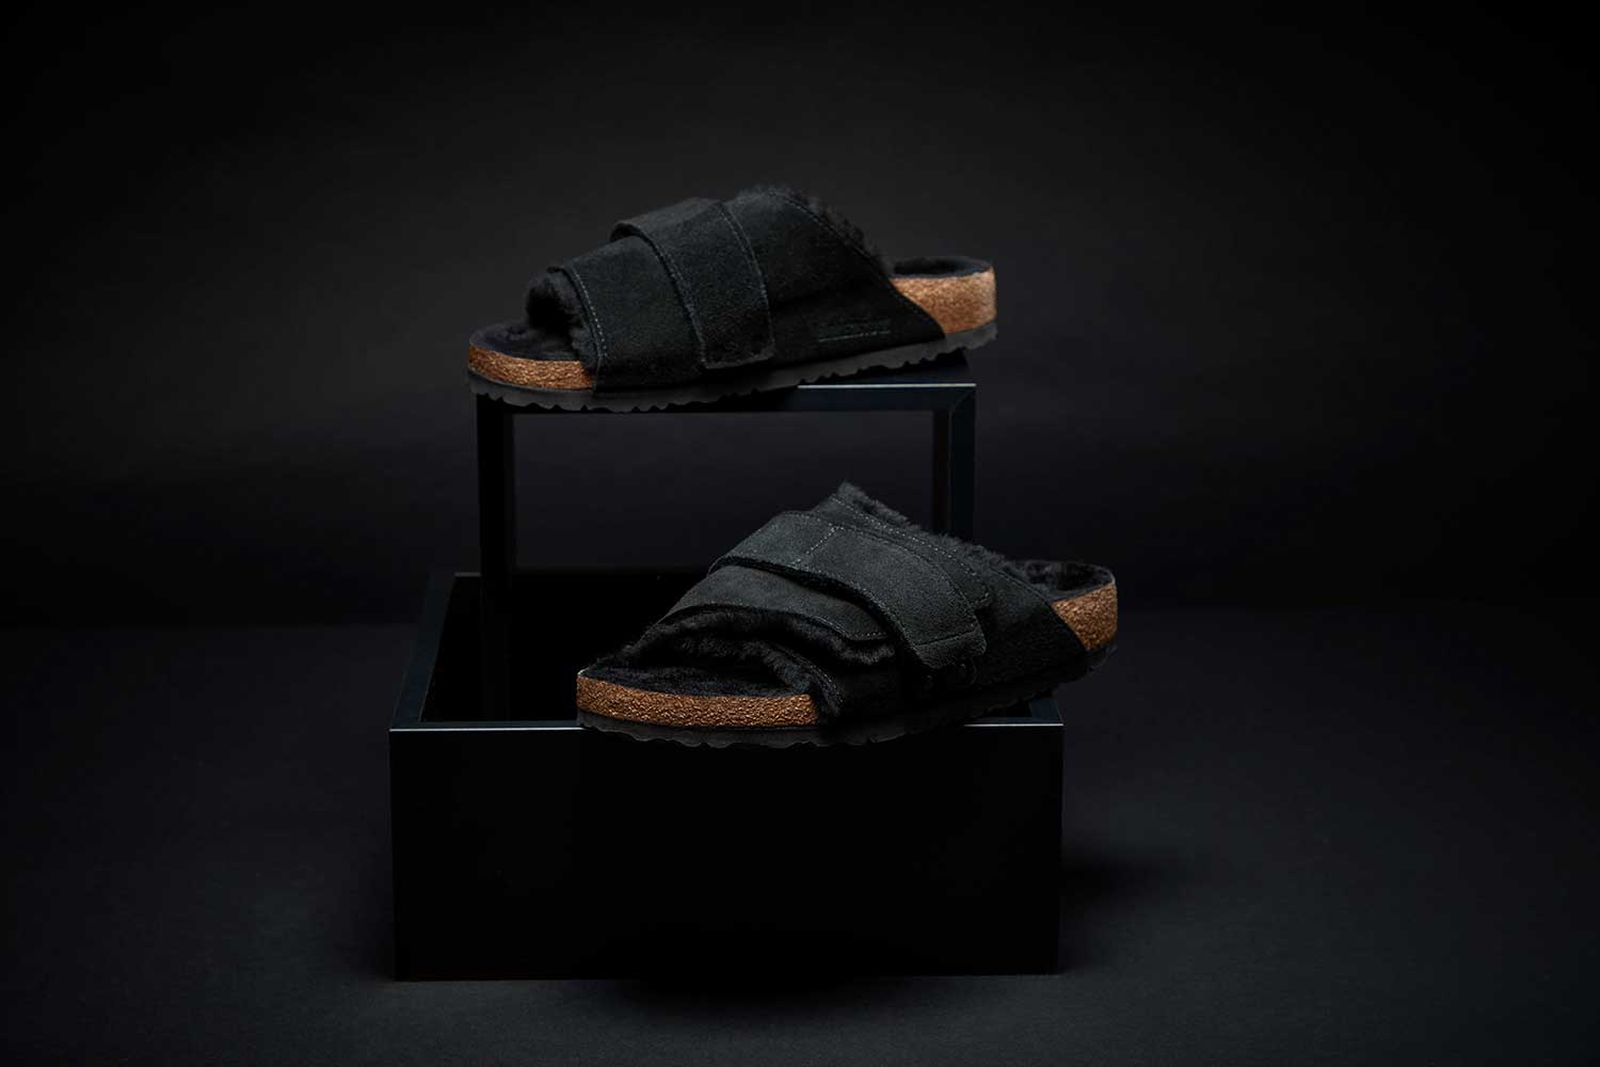 birkenstock-kyoto-sandals-fur-lined-shoes (2)